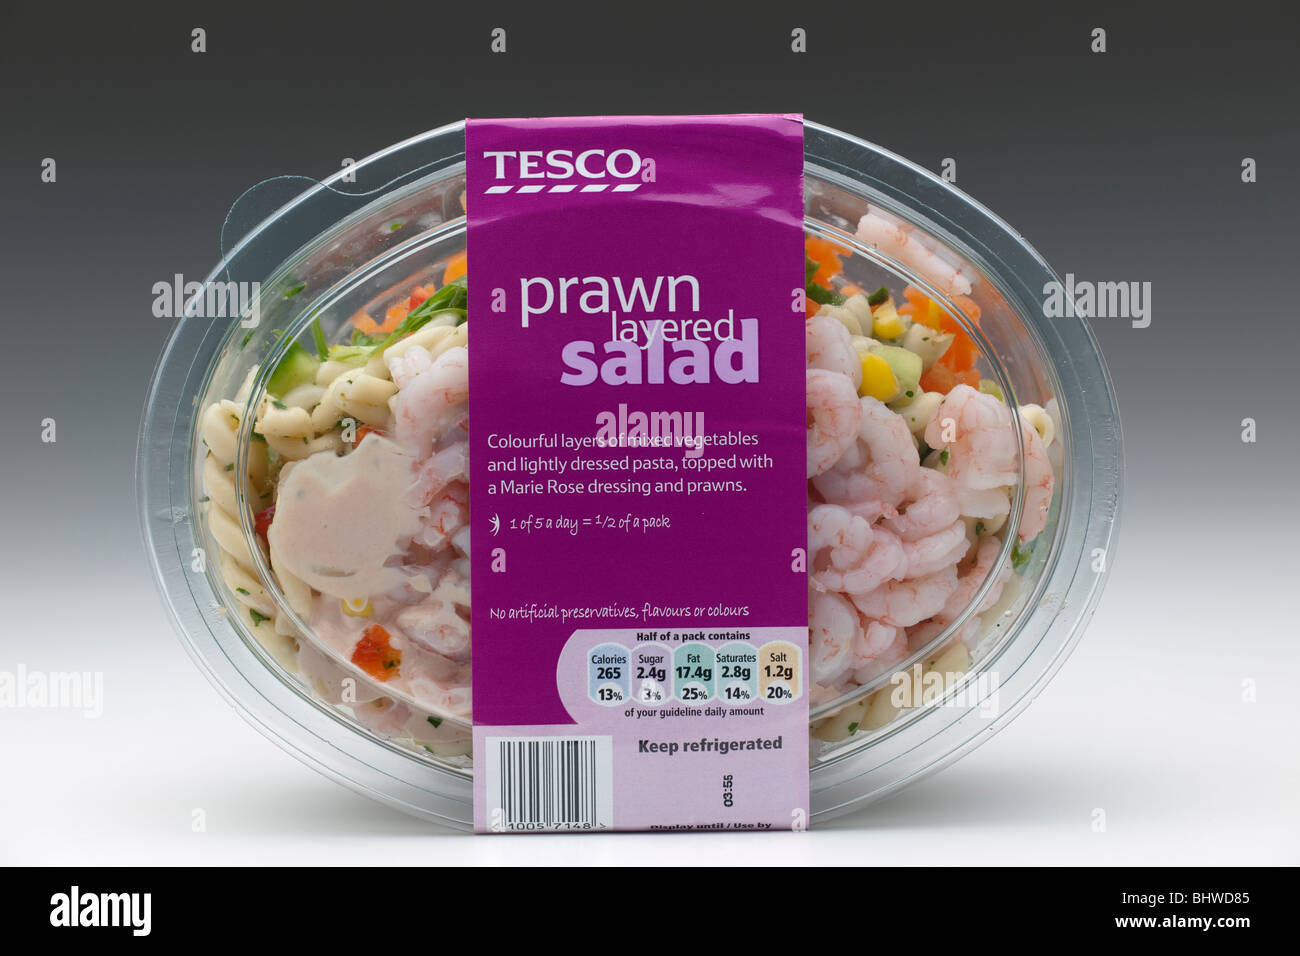 Crevettes salade Tesco en couches dans un bac en plastique transparent Banque D'Images